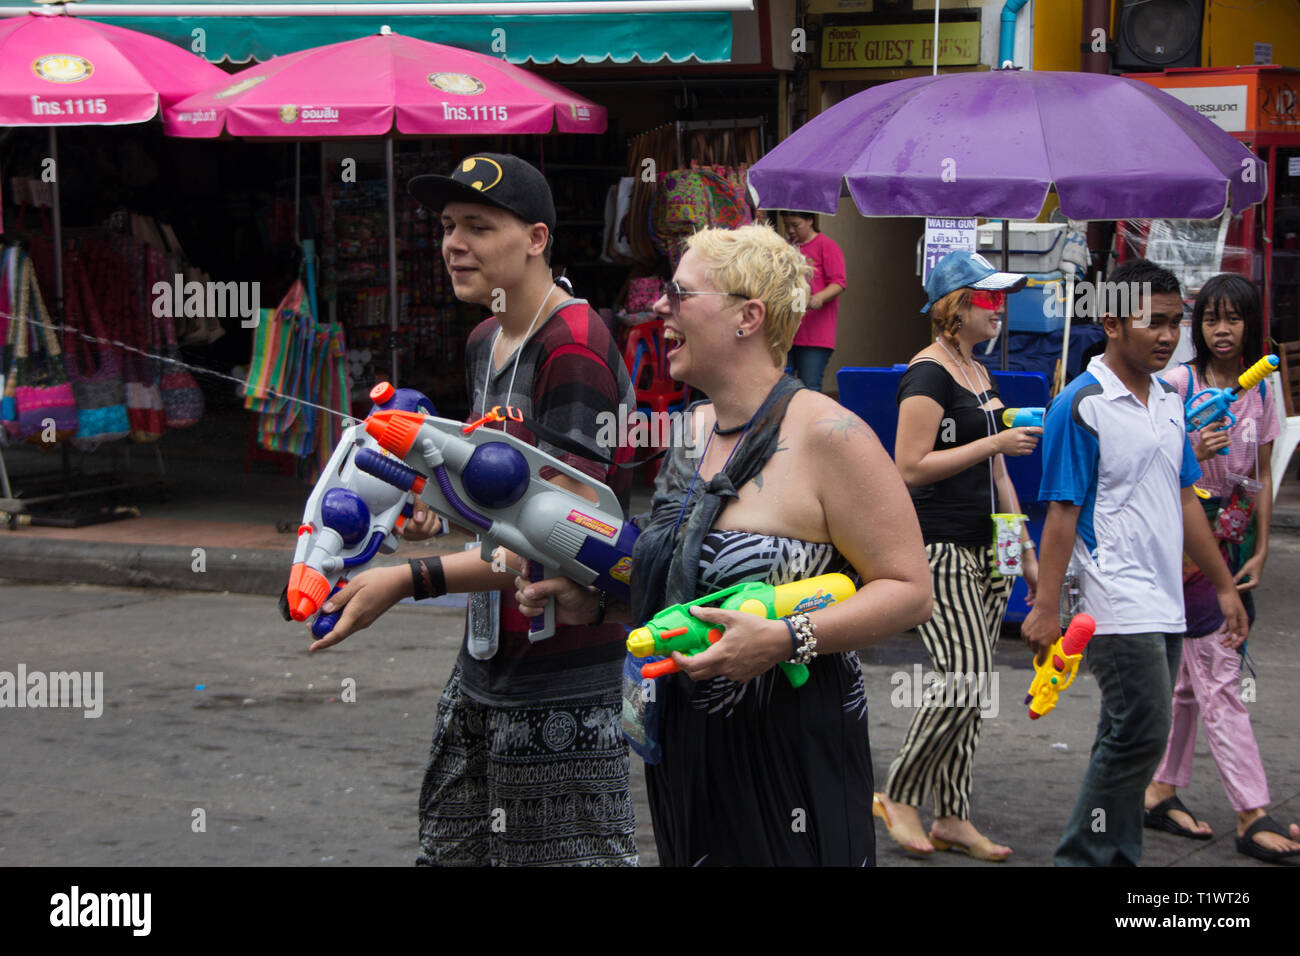 Les gens avec les pistolets à eau célébrant le nouvel an Thaï de Songkran à Khaosan Road, Bangkok Thaïlande Banque D'Images